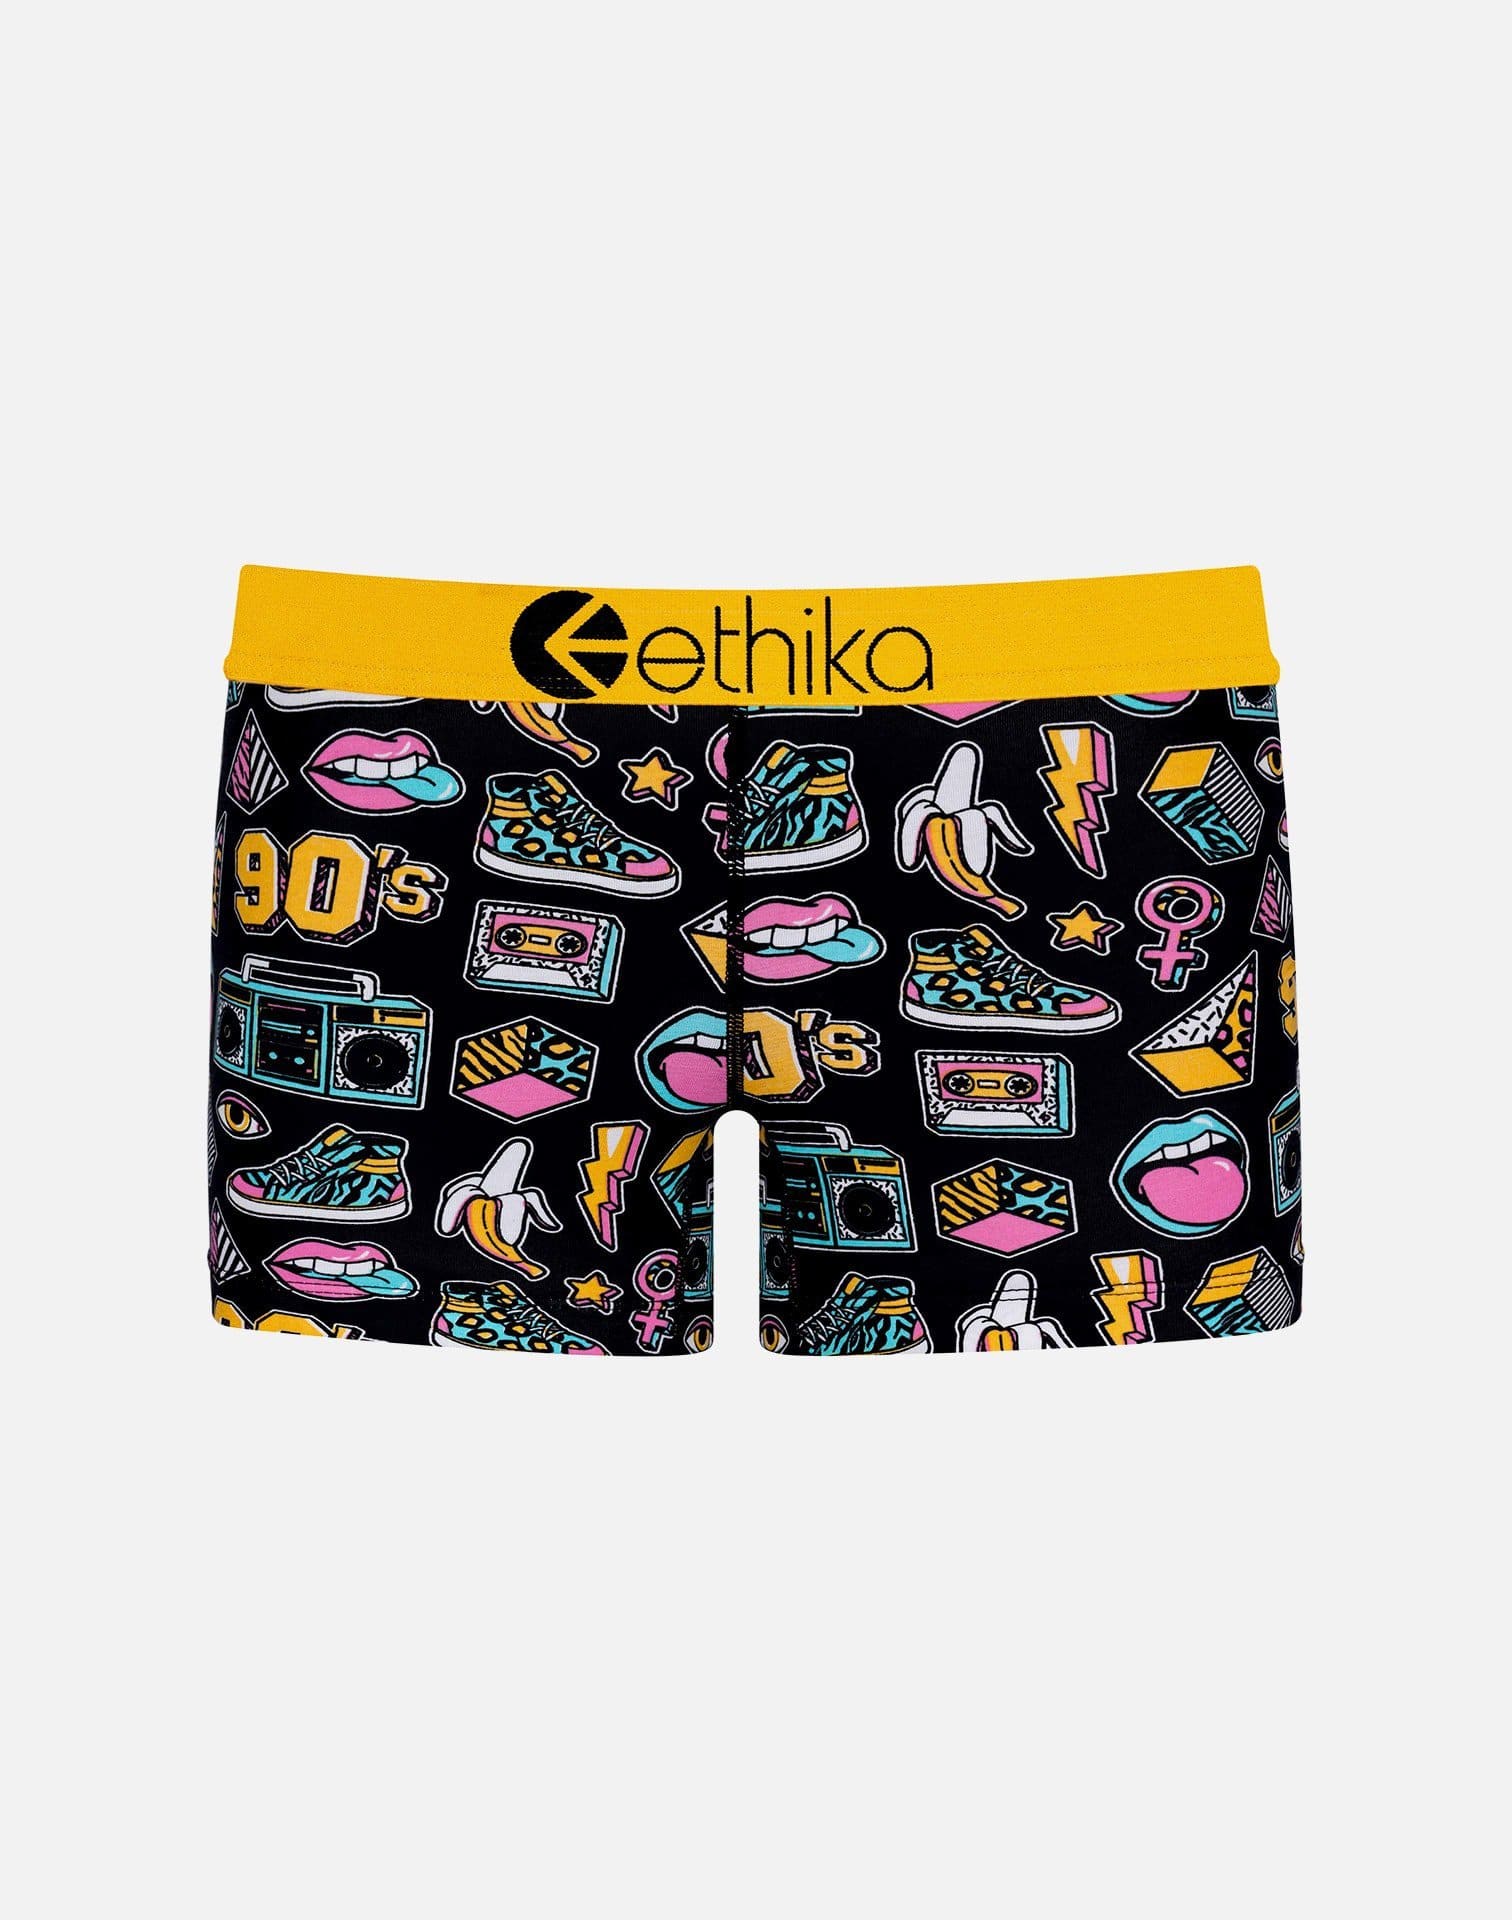 Ethika Women's 90's Swag Boy Shorts